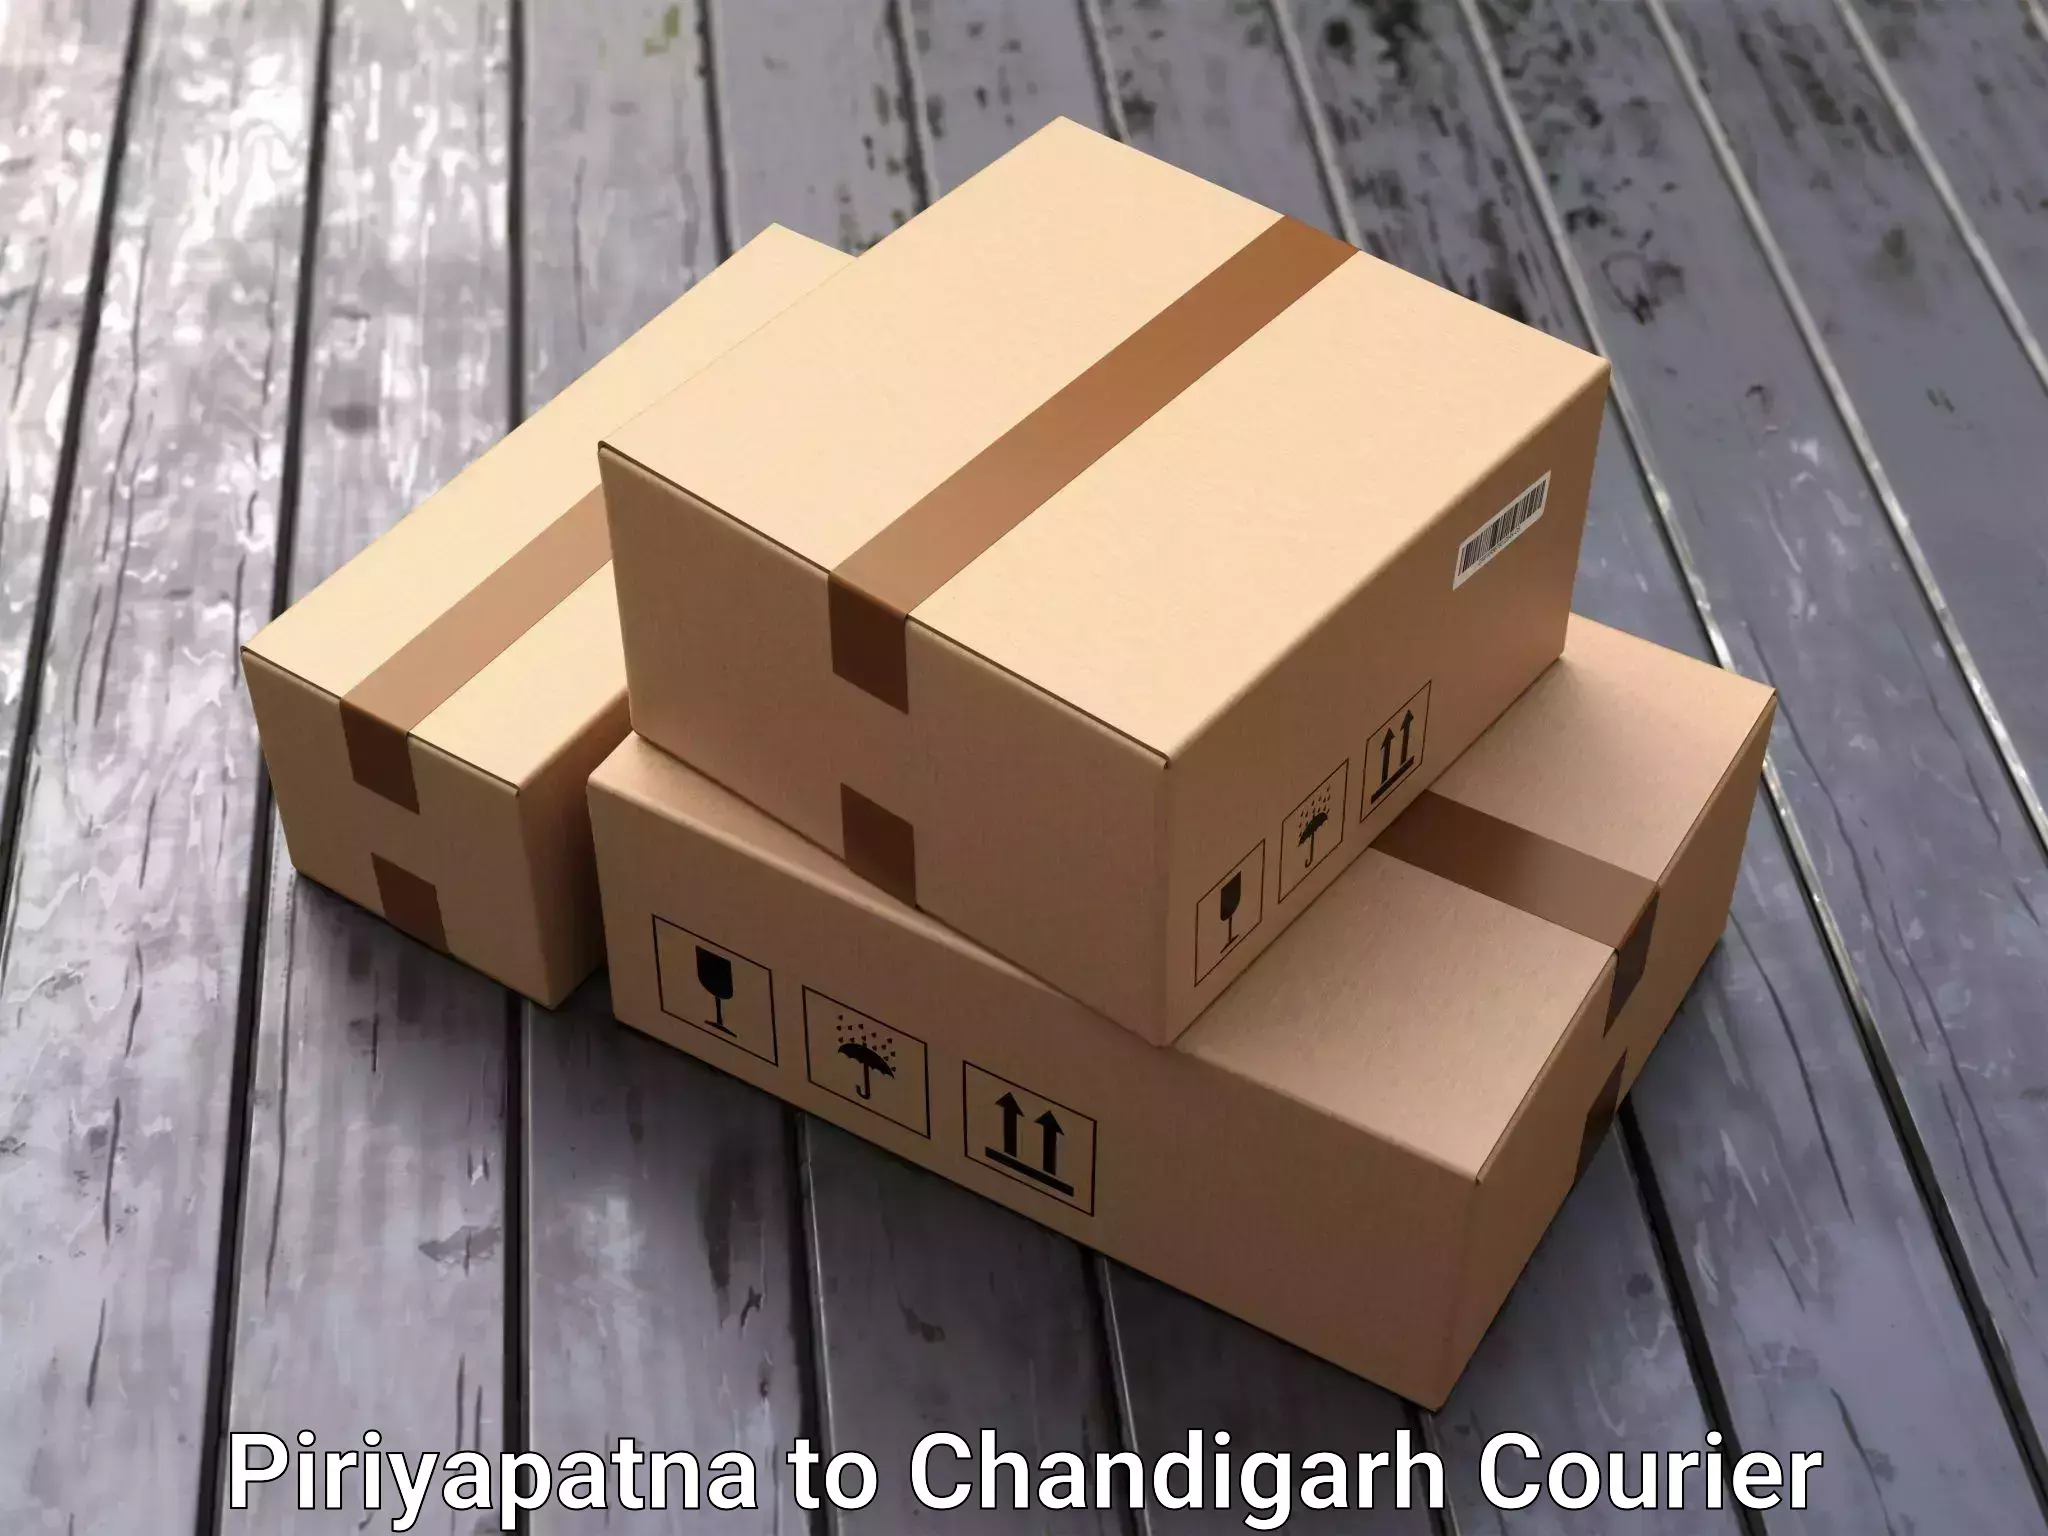 Furniture relocation experts Piriyapatna to Chandigarh